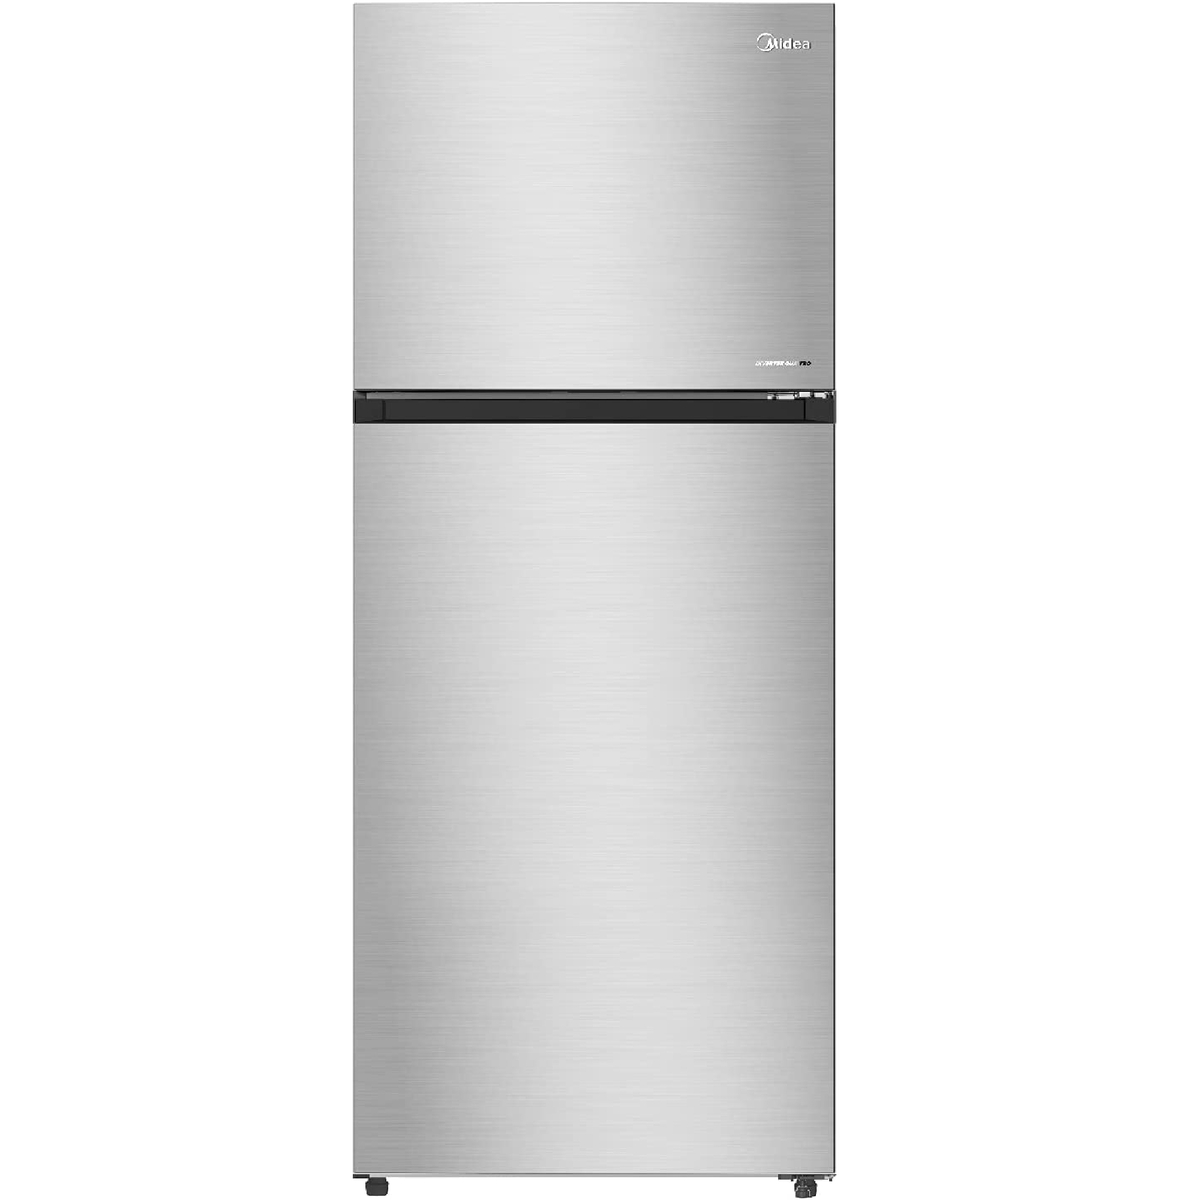 Midea Top Mount Double Door Refrigerator, 645 L, Silver, MDRT645MTE46